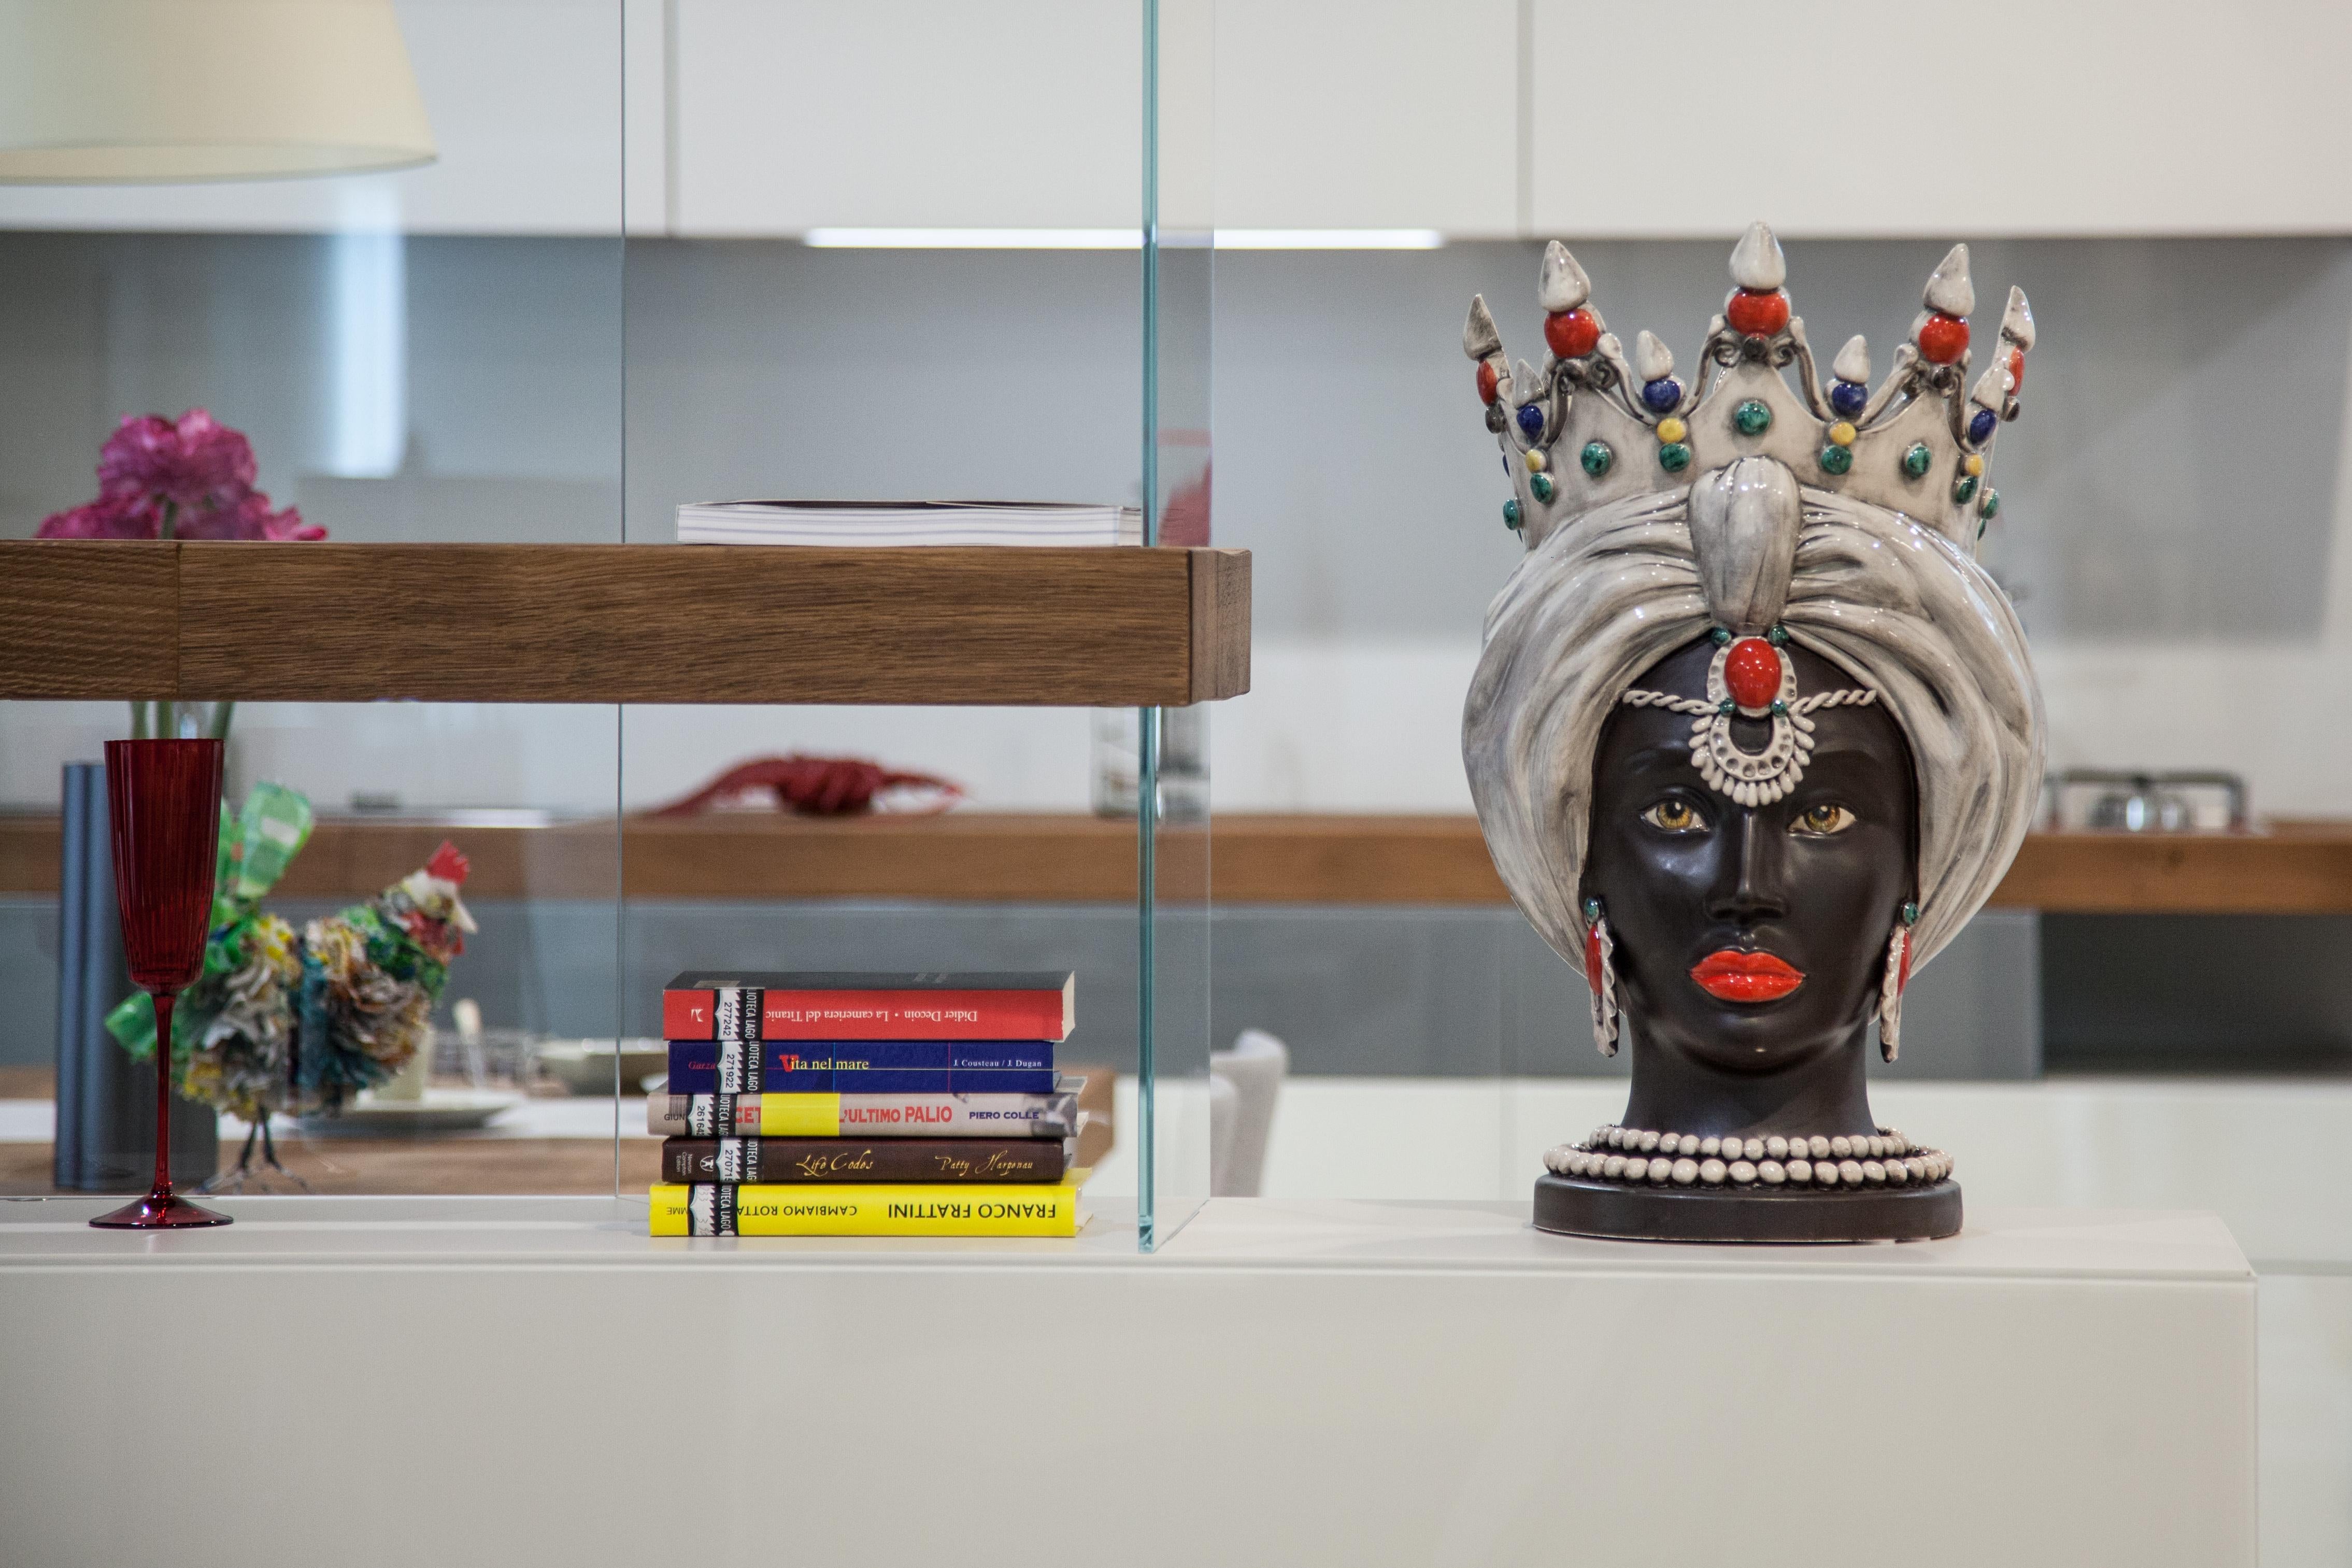 Die Sammlung

Diese Kollektion bietet Ideen für zeitgenössische Dekoration durch raffinierte Kunstwerke, die an die Tradition der Keramik von Caltagirone gebunden sind, Kunstobjekte, die Geschichte und Design verbinden.
Die extreme Liebe zum